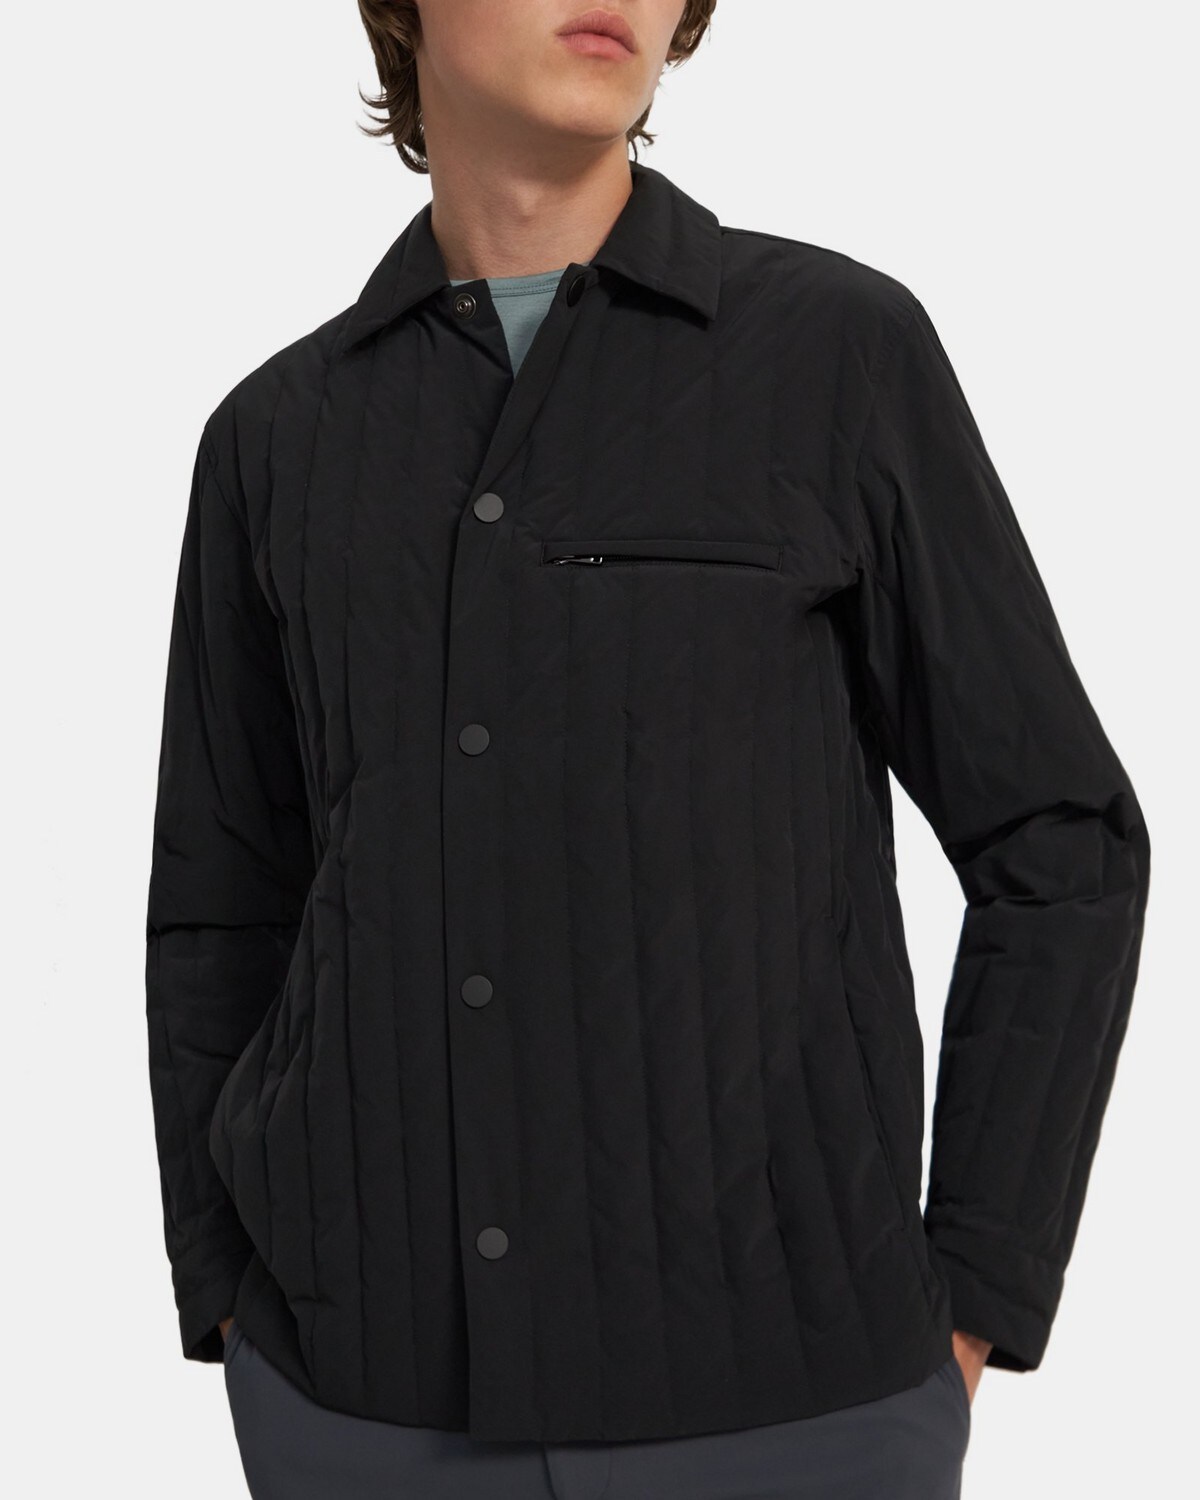 띠어리 맨 셔츠 재킷 Theory Quilted Shirt Jacket in Paper Nylon,BLACK